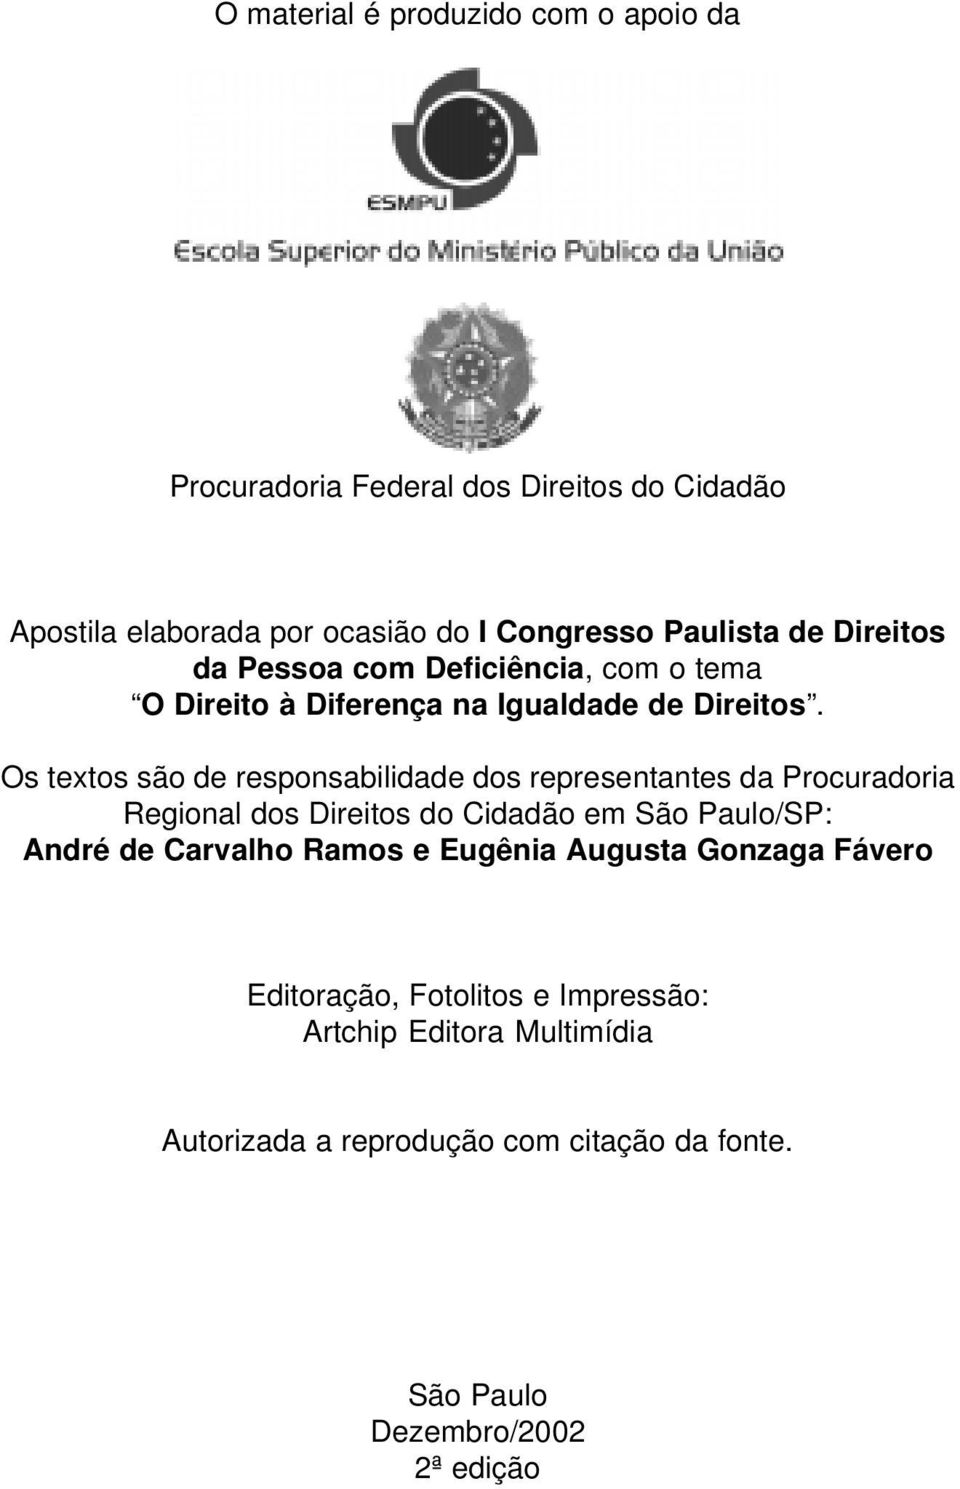 Os textos são de responsabilidade dos representantes da Procuradoria Regional dos Direitos do Cidadão em São Paulo/SP: André de Carvalho